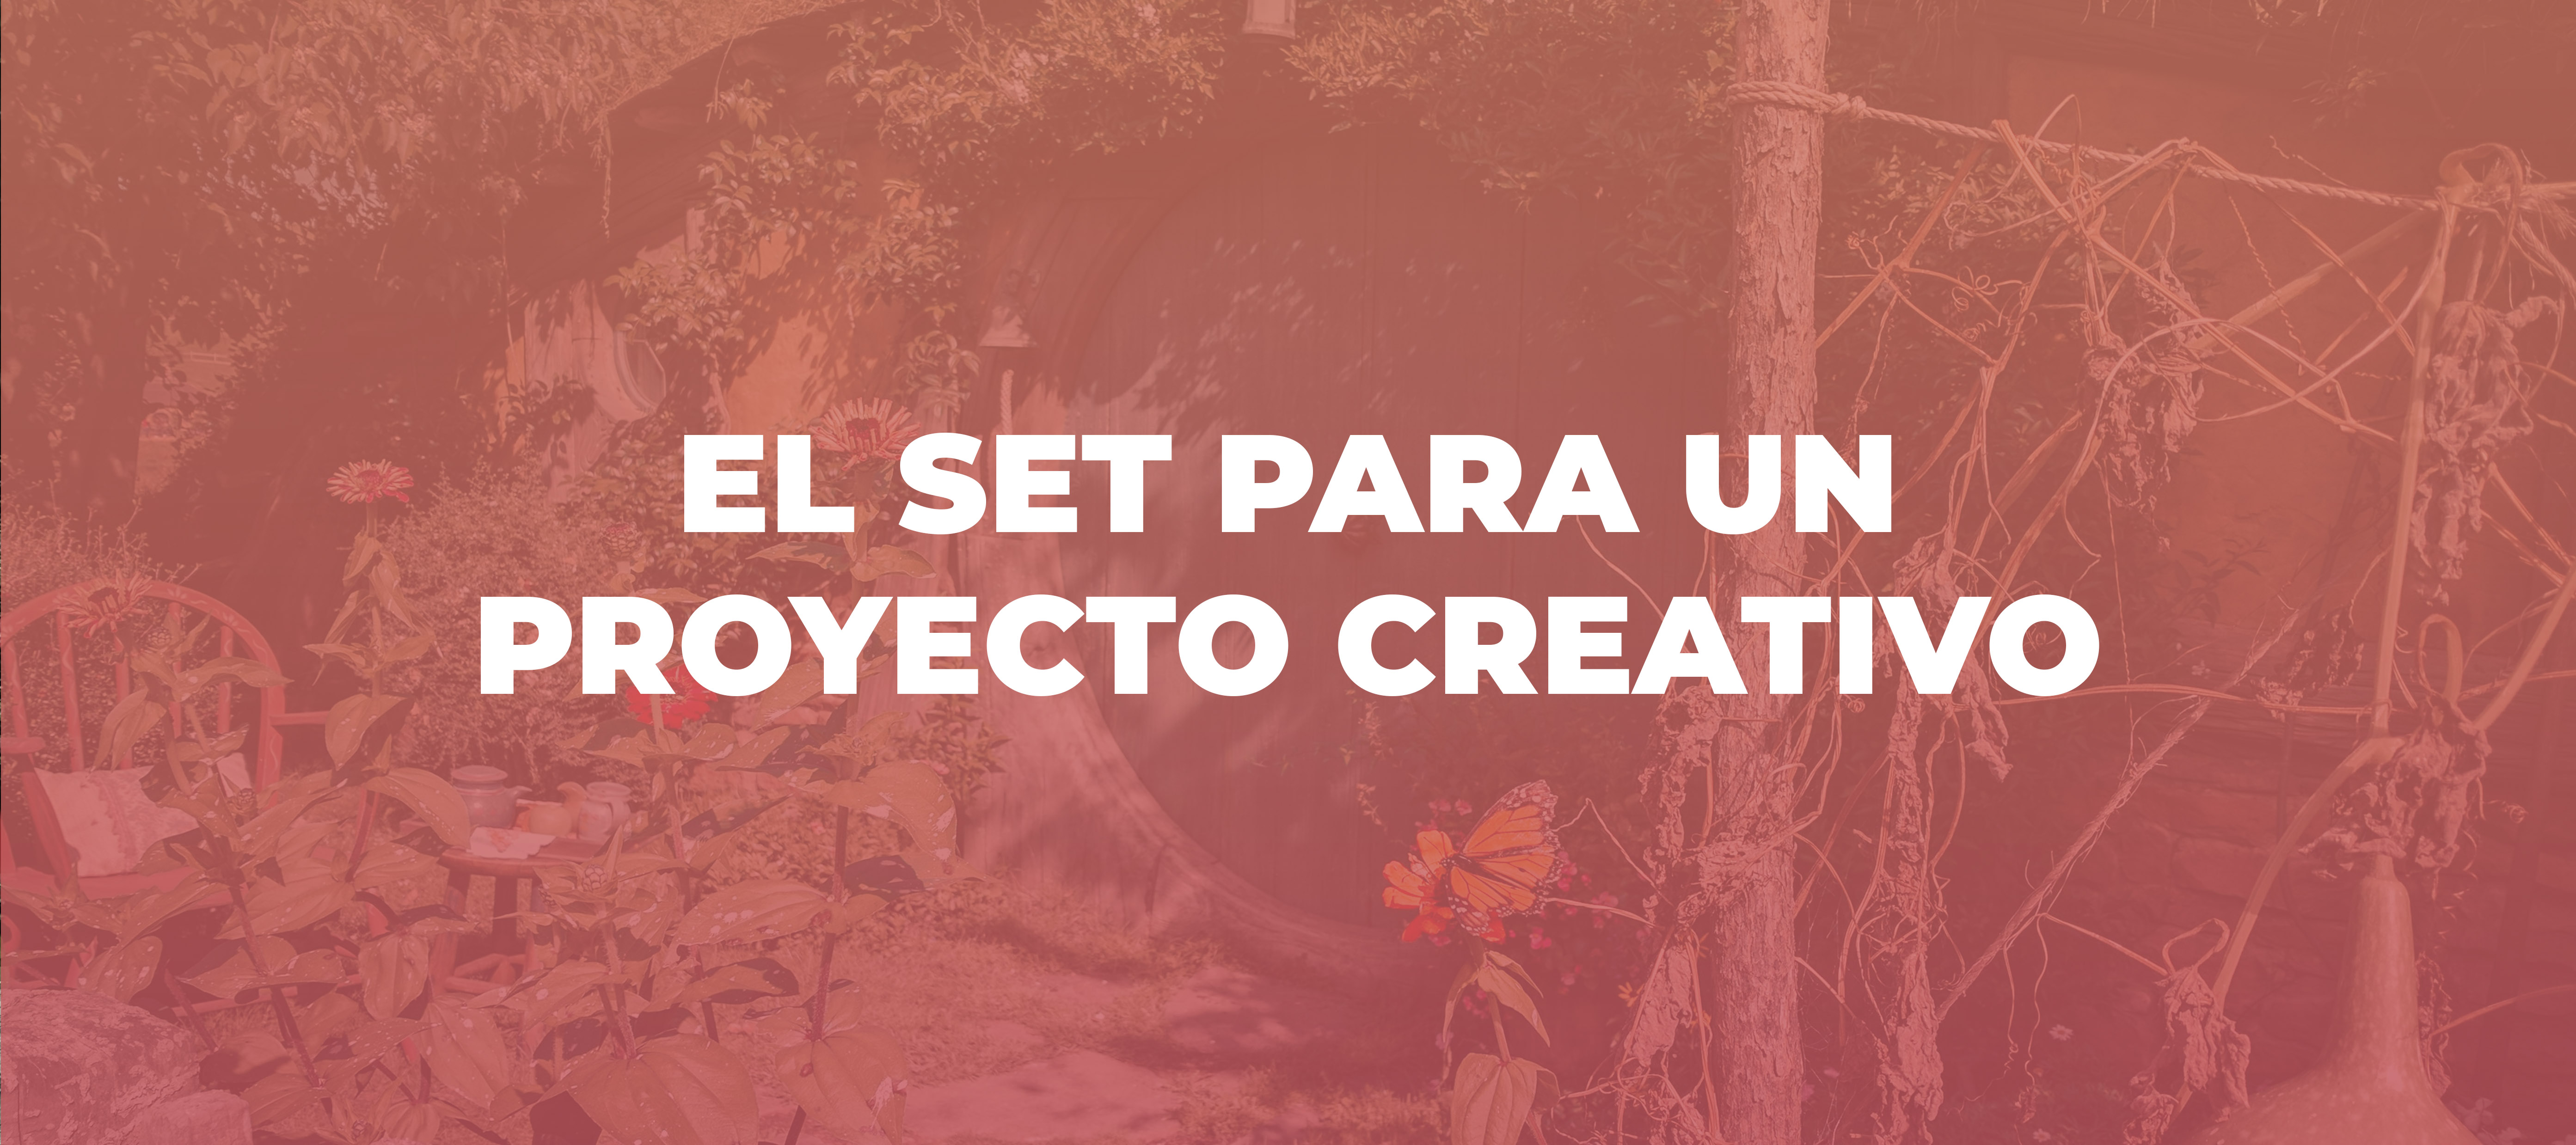 El_set_para_un_proyecto_creativo.jpg